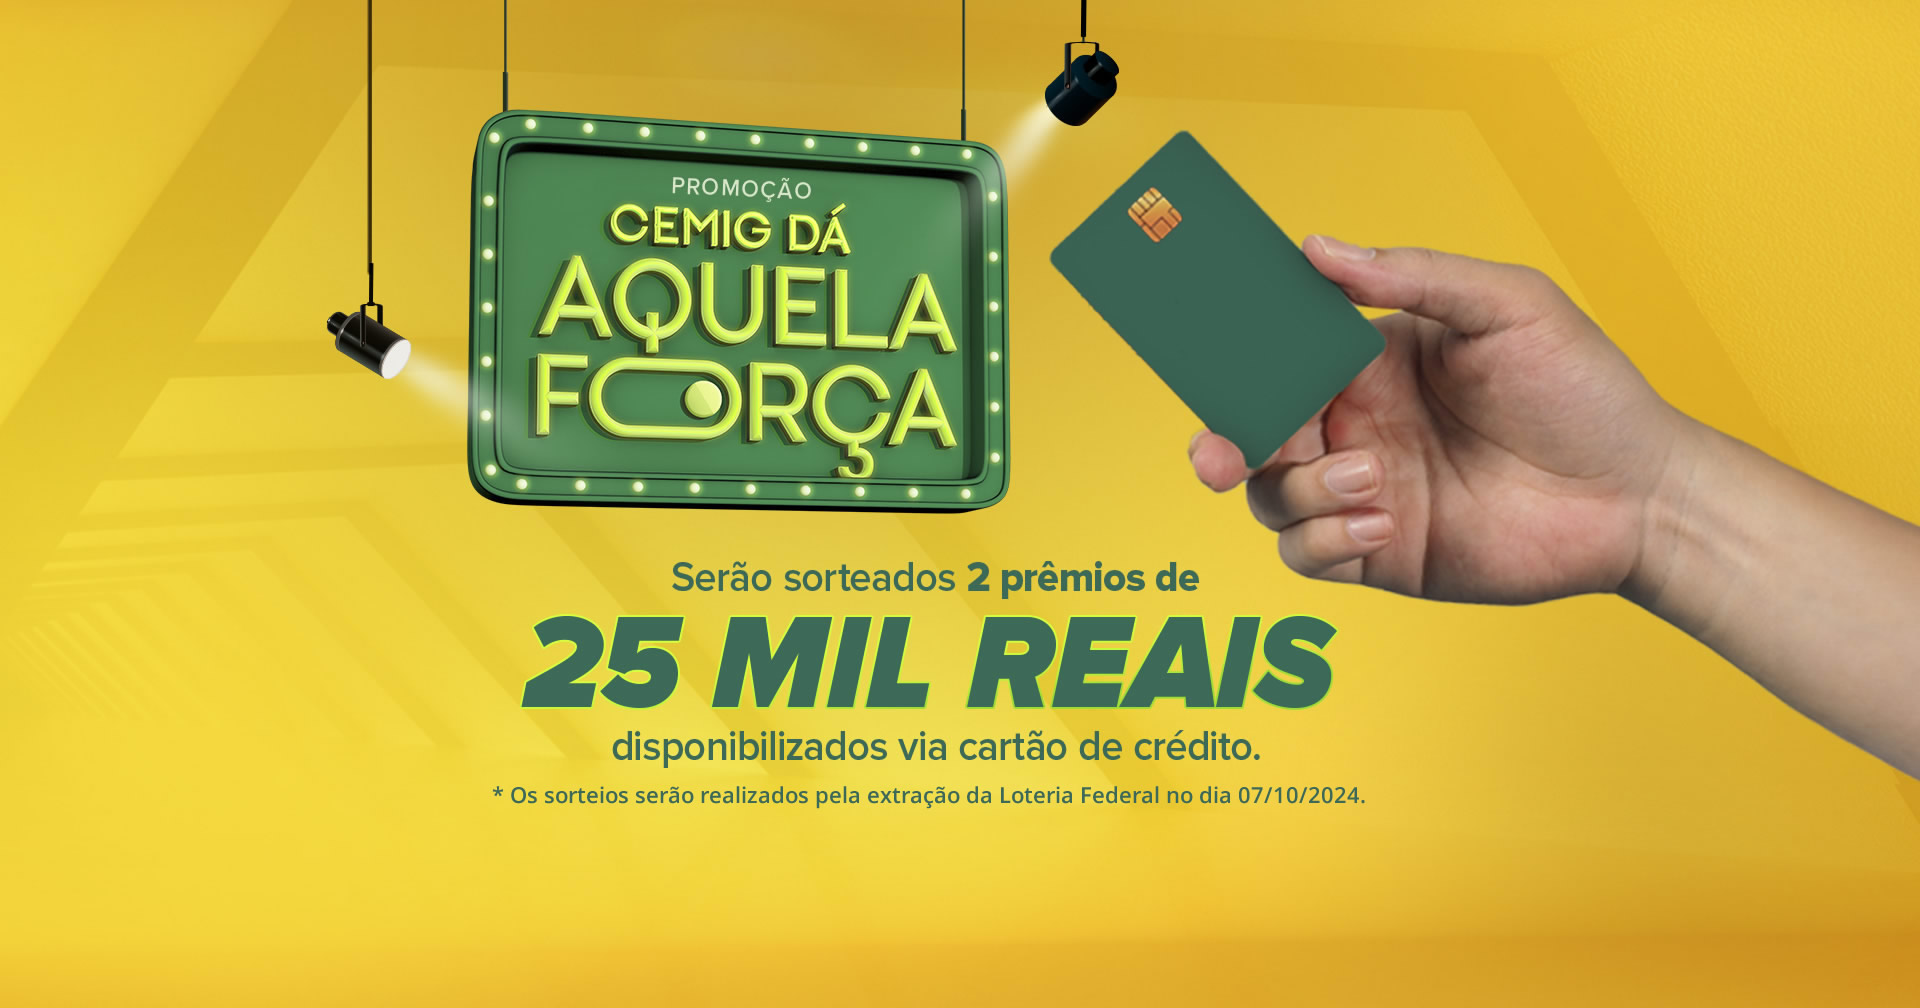 Promoção Cemig dá aquela força - Serão sorteados 2 prêmios de 25 mil reais disponibilizados via cartão de crédito.